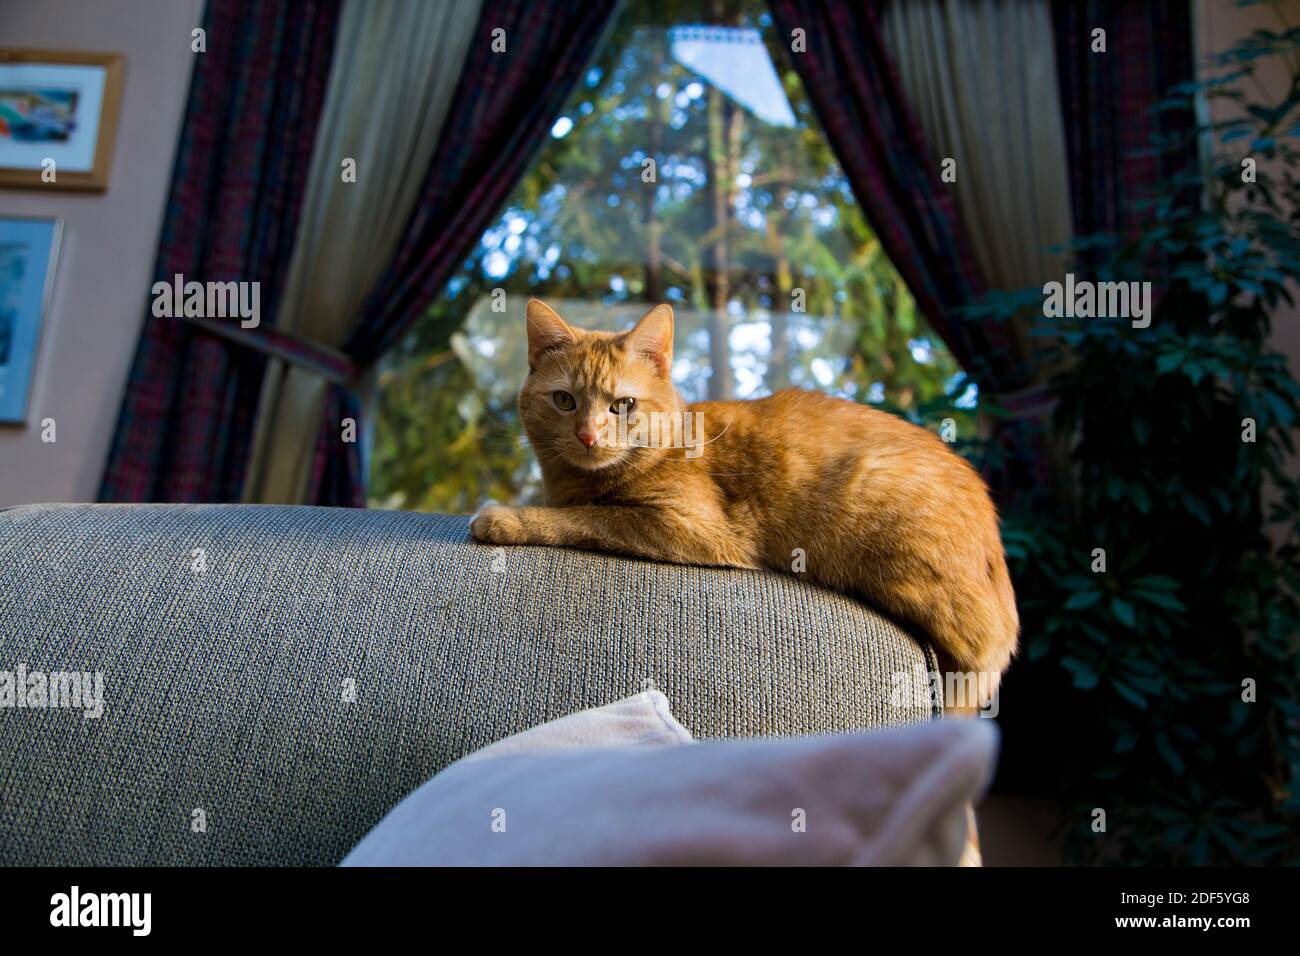 Proprietario di casa, gatto seduto su poltrona Foto Stock